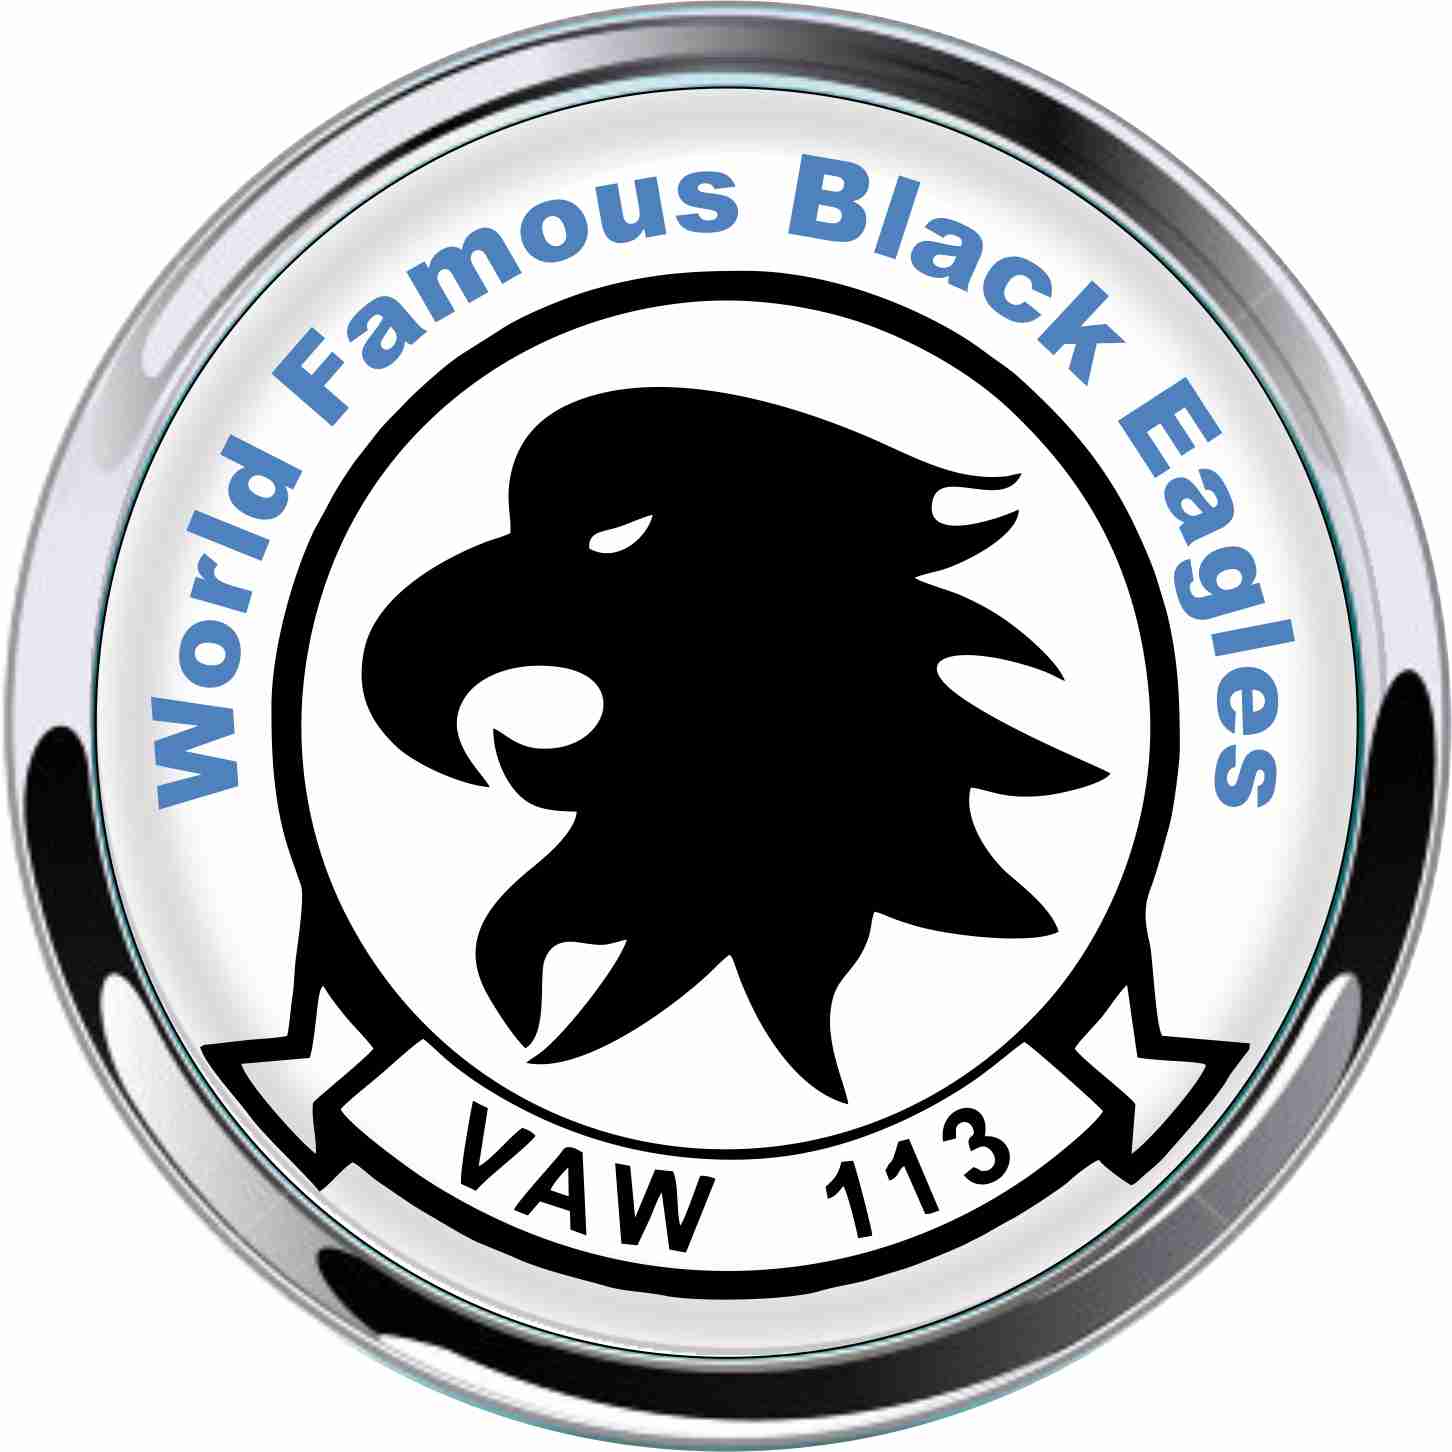 VAW 113 Metal Car Emblem